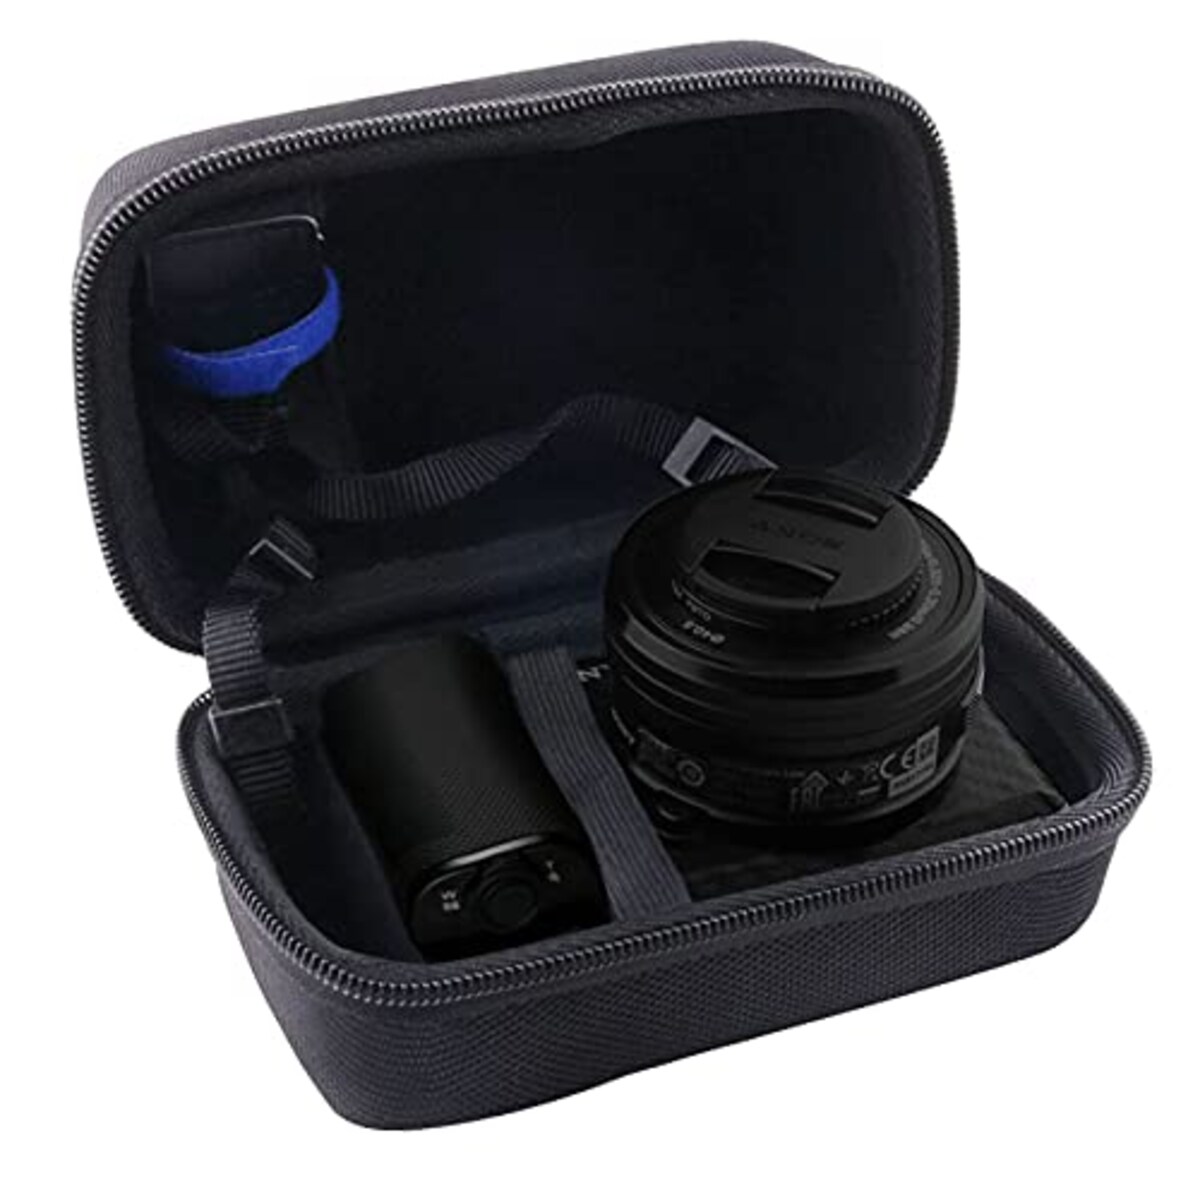 WERJIA 収納ケースソニー(SONY) VLOGCAM ZV-E10L/ZV-E10カメラ専用収納ケース,ケース対応16-50mmレンズカメラ